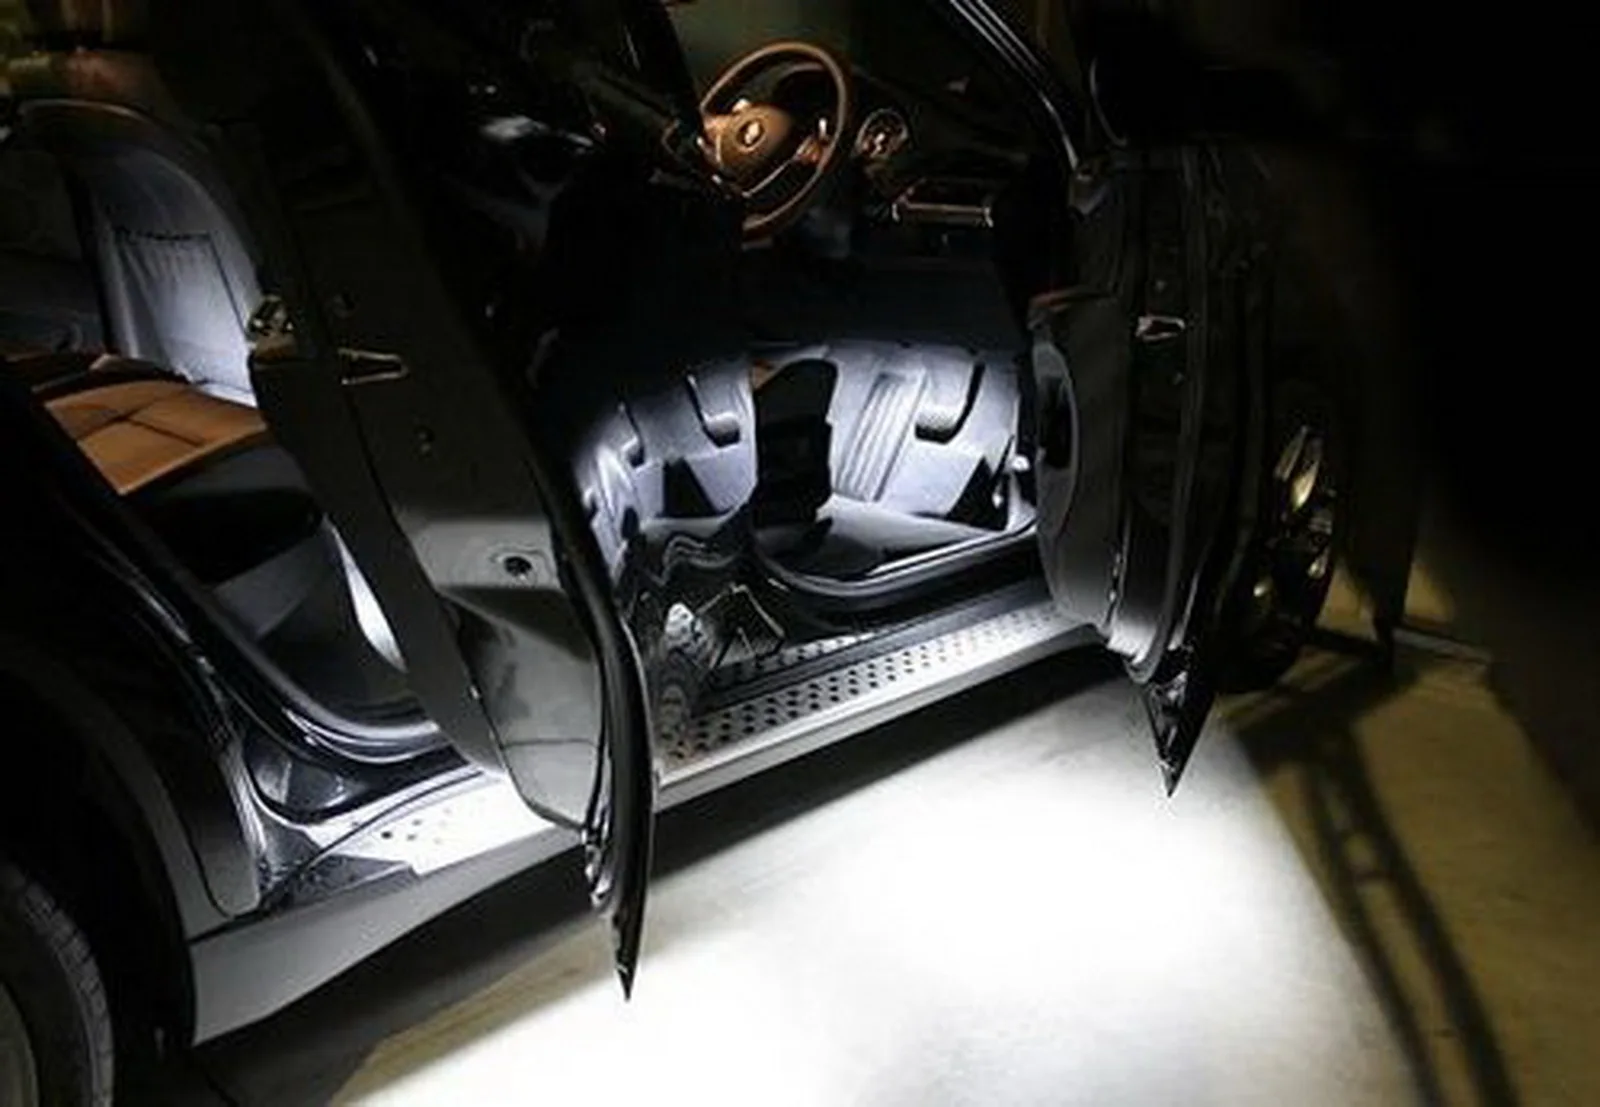 ANGRONG 2X светодио дный ног Предоставлено Боковая дверь свет для VW CC Eos Golf/GTI Jetta Passat поло Sharan MK2 Scirocco Tiguan Touareg